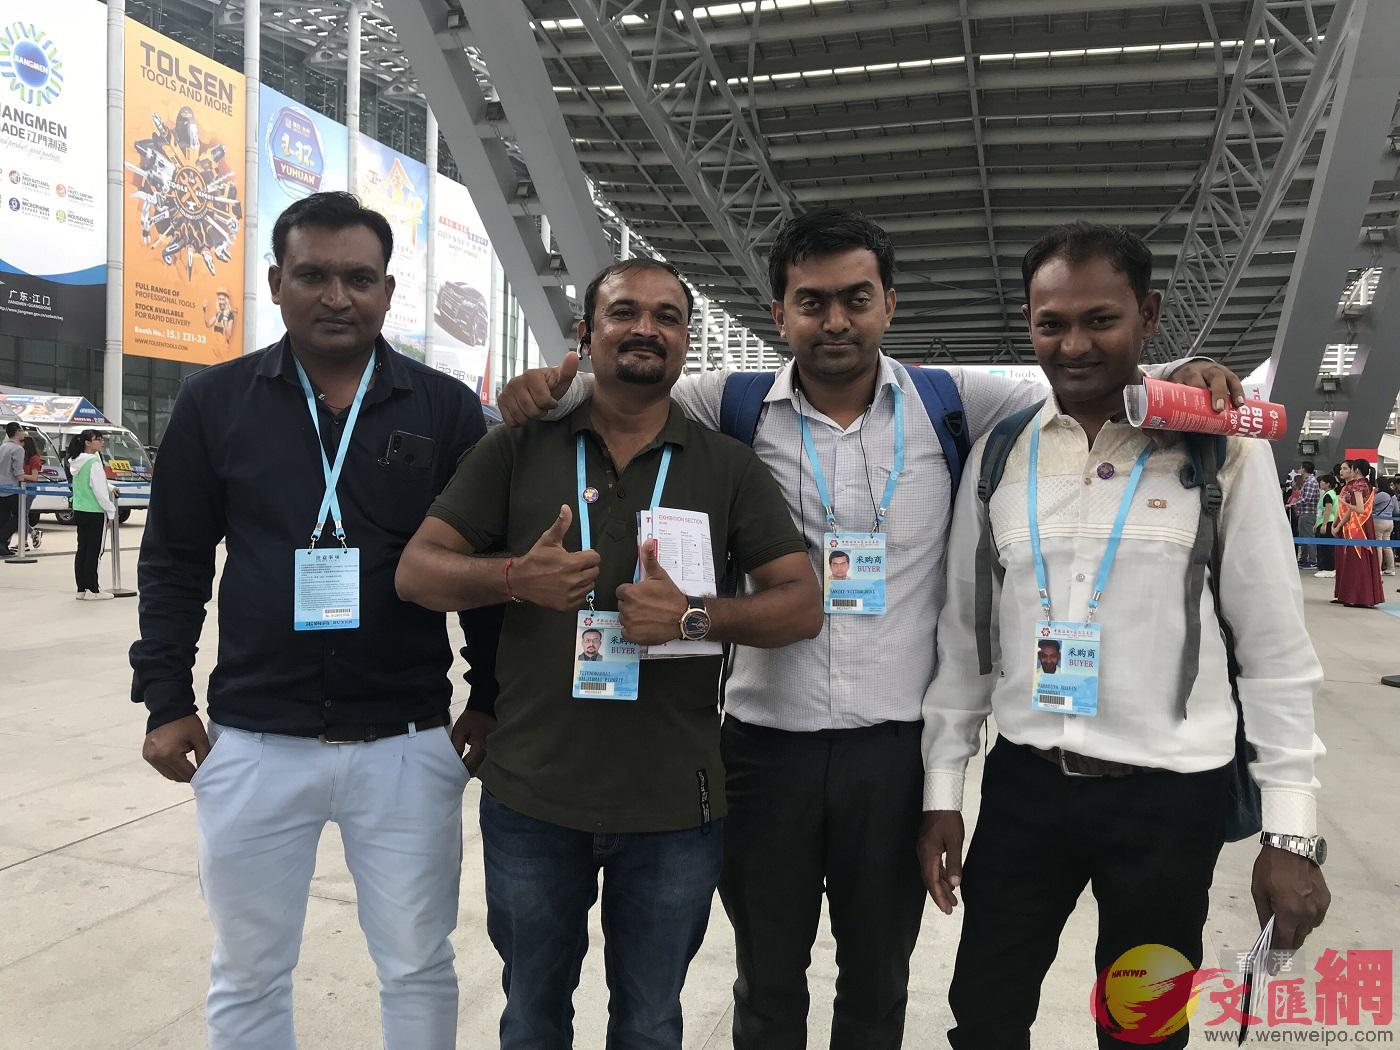 來自印度的採購商SANJAY VITTHAL BHAI]右二^帶着三位朋友一起參加廣交會C]記者 盧靜怡 攝^